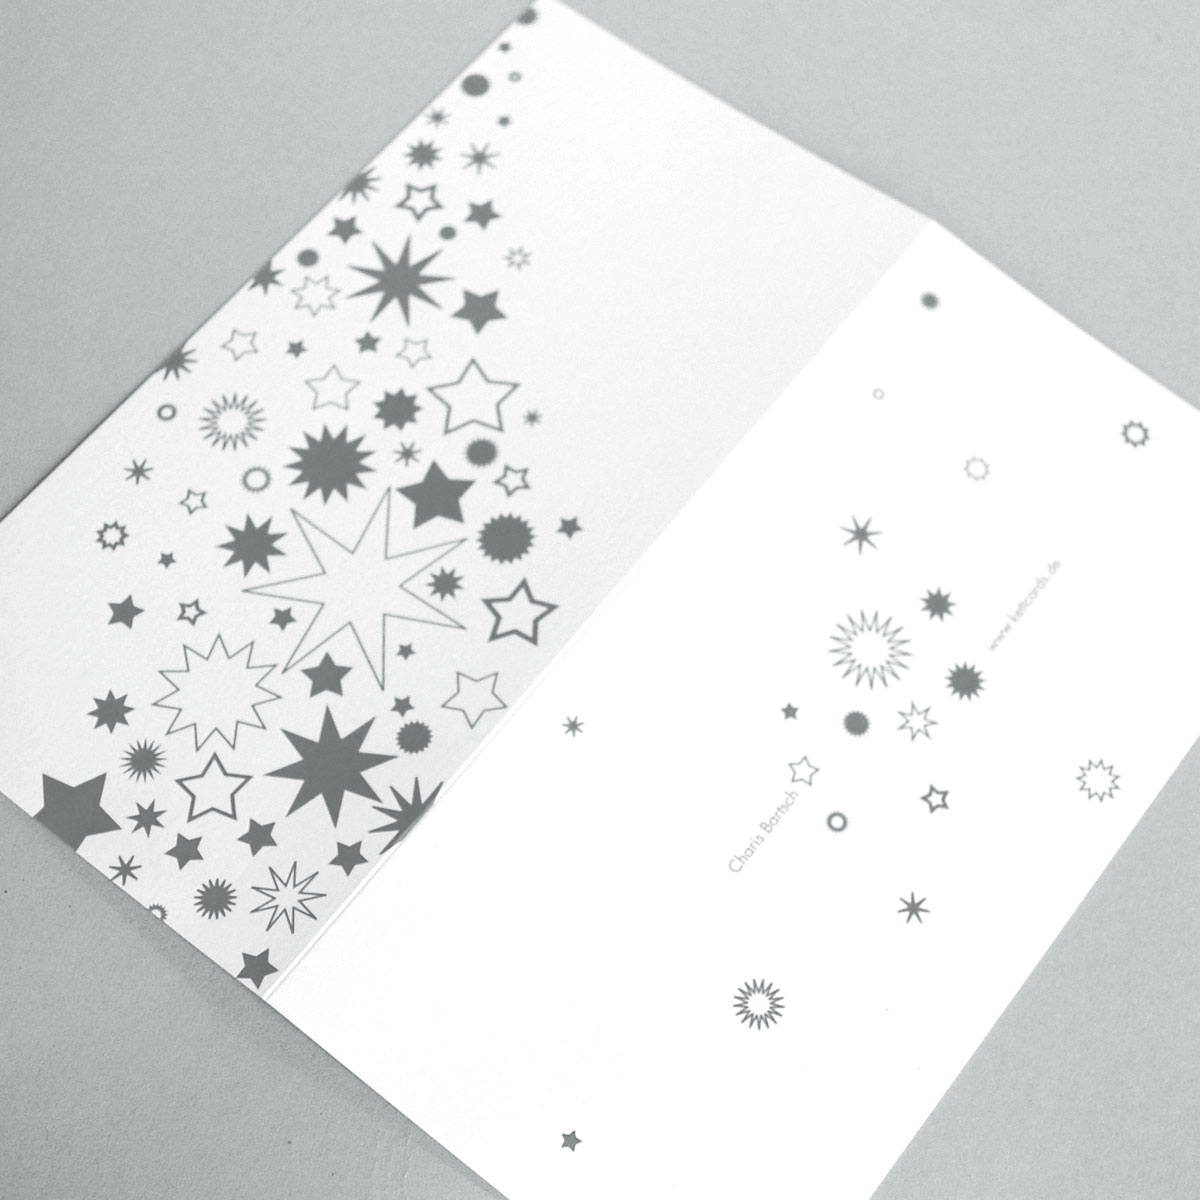 Weihnachtskarten mit mit UV-Spot-Reliefdruck auf silbernen Sternen